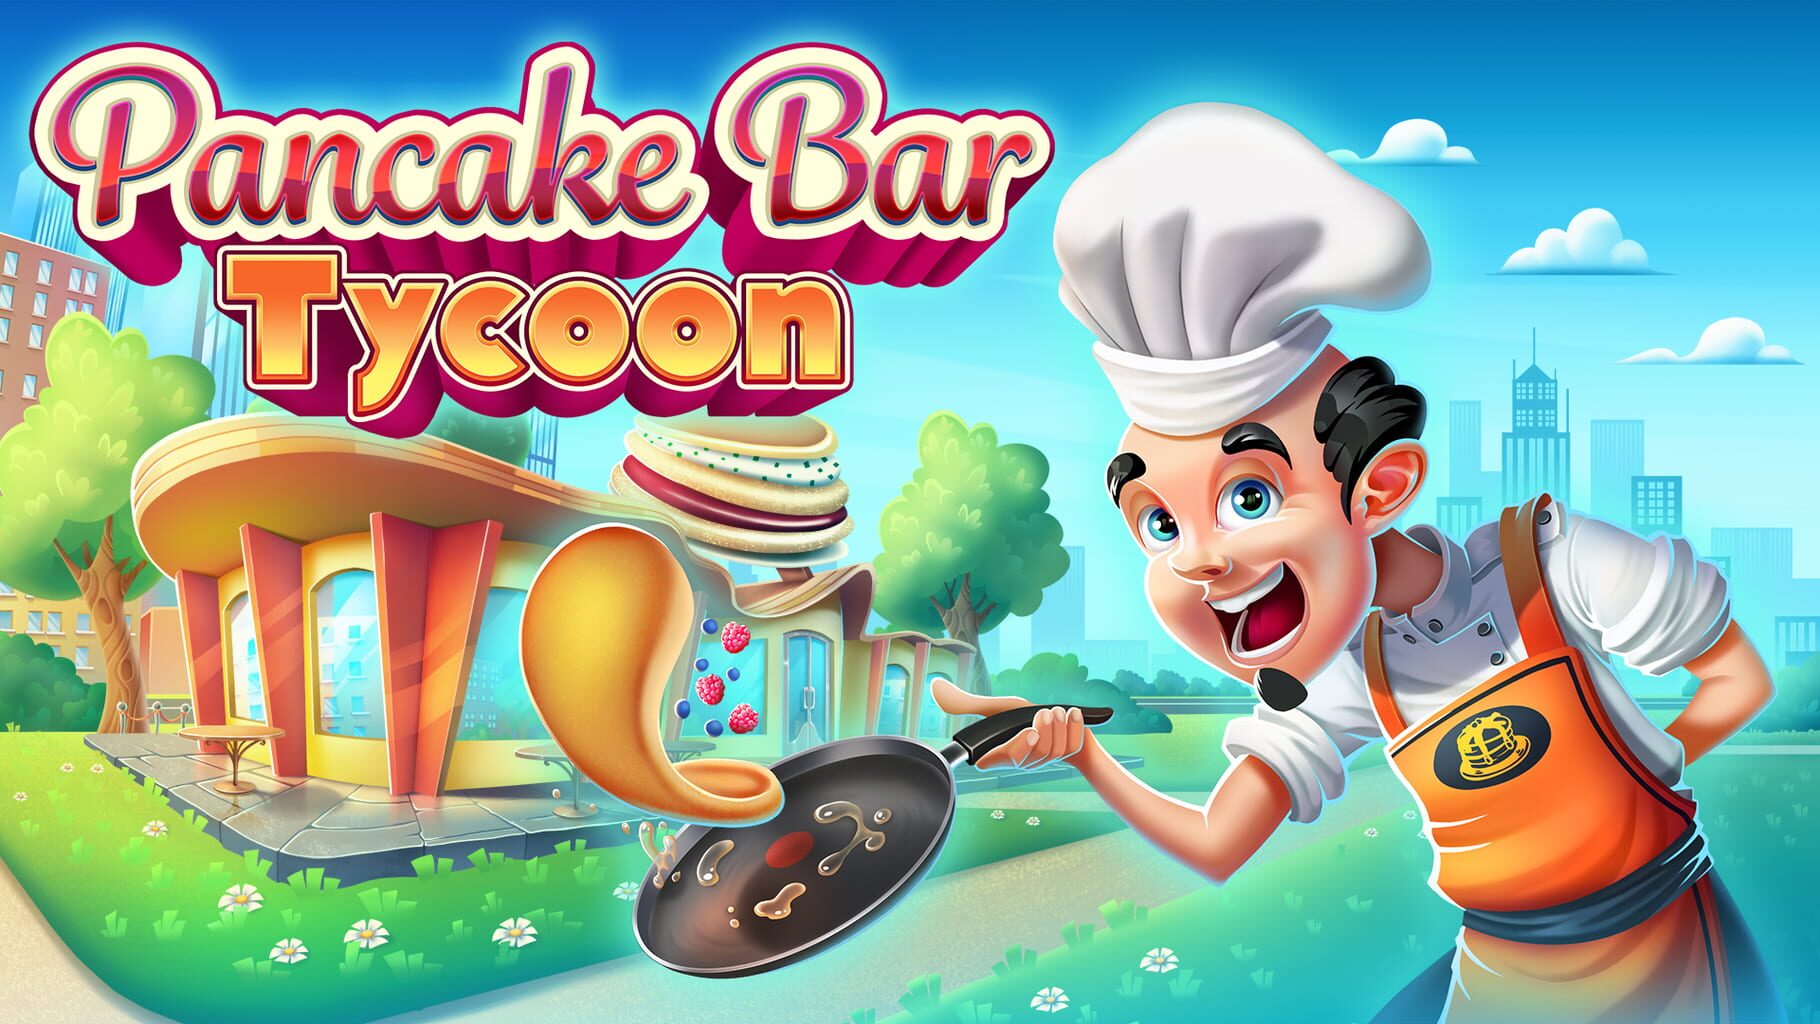 Pancake Bar Tycoon artwork